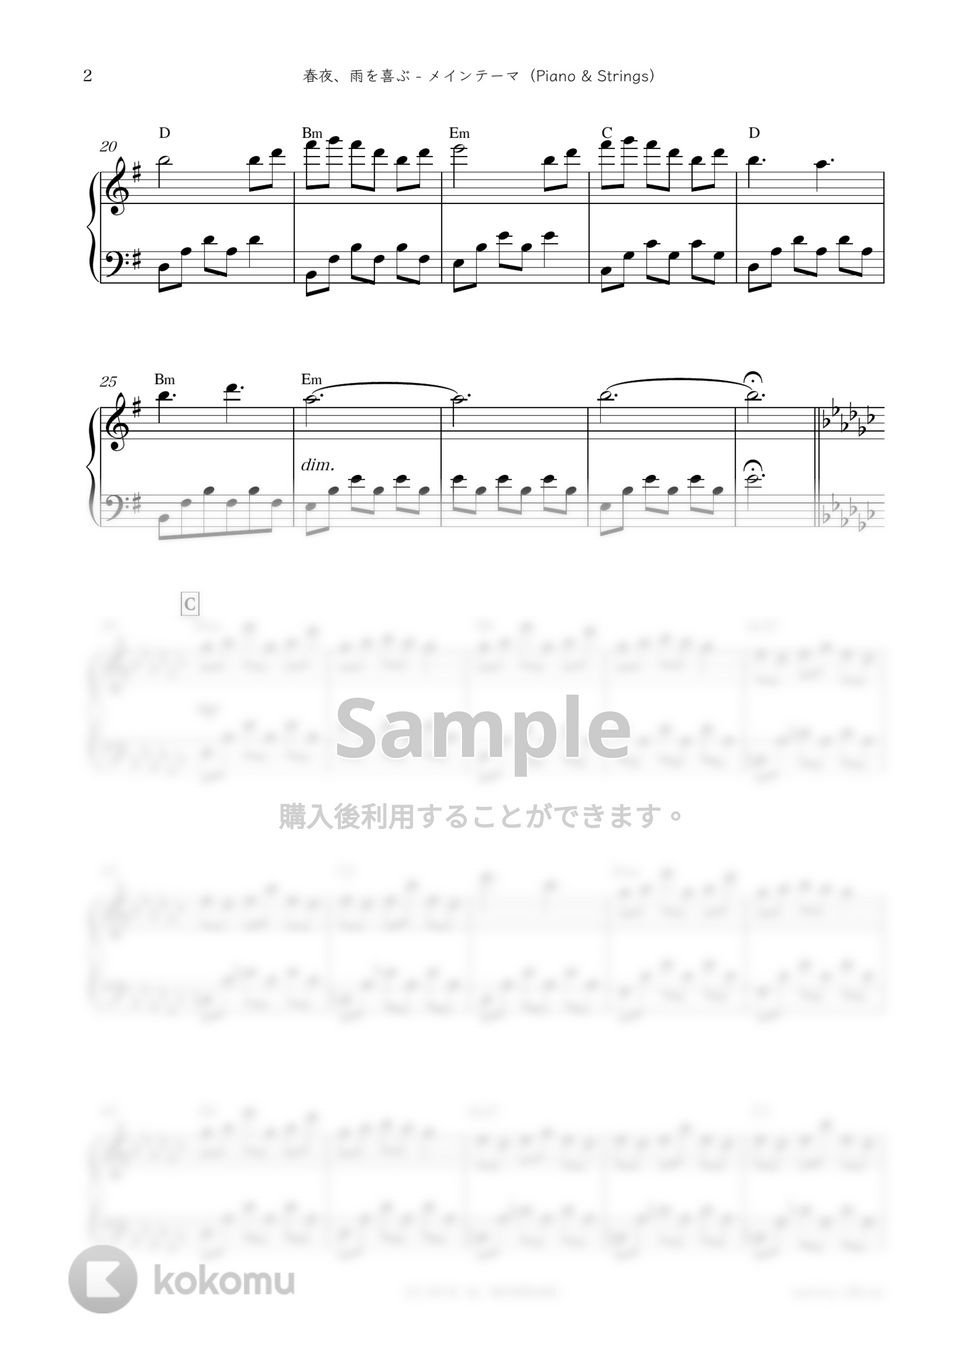 ドラマ『中学聖日記』OST - 春夜、雨を喜ぶ-メインテーマ (Piano & Strings) by sammy